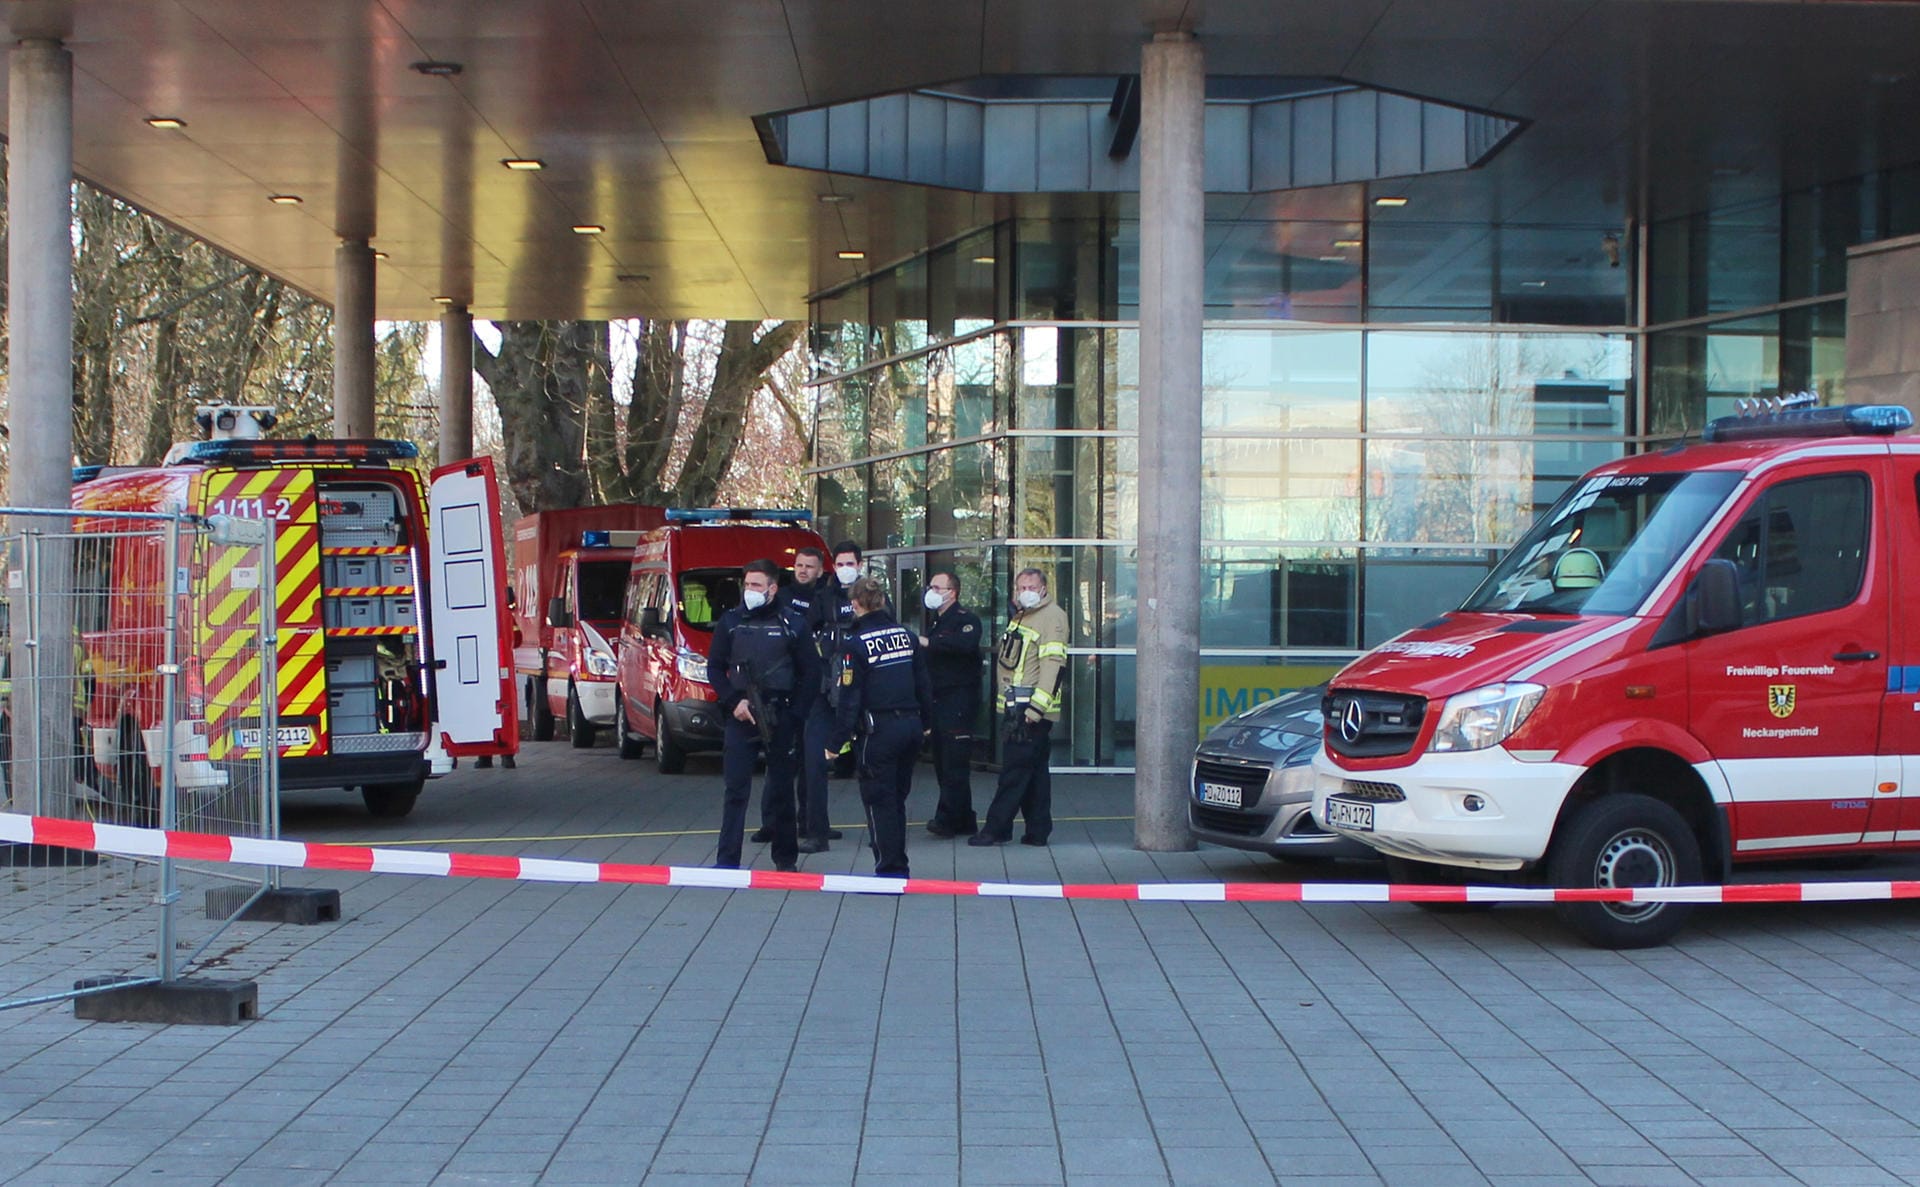 Polizisten stehen neben Krankenwagen und Fahrzeugen der Feuerwehr auf der Gelände der Heidelberger Universität an einem Eingang zu einer Klinik, die sich auf dem Campus befindet. Einer der Polizisten hält dabei eine Maschinenpistole in der Hand.